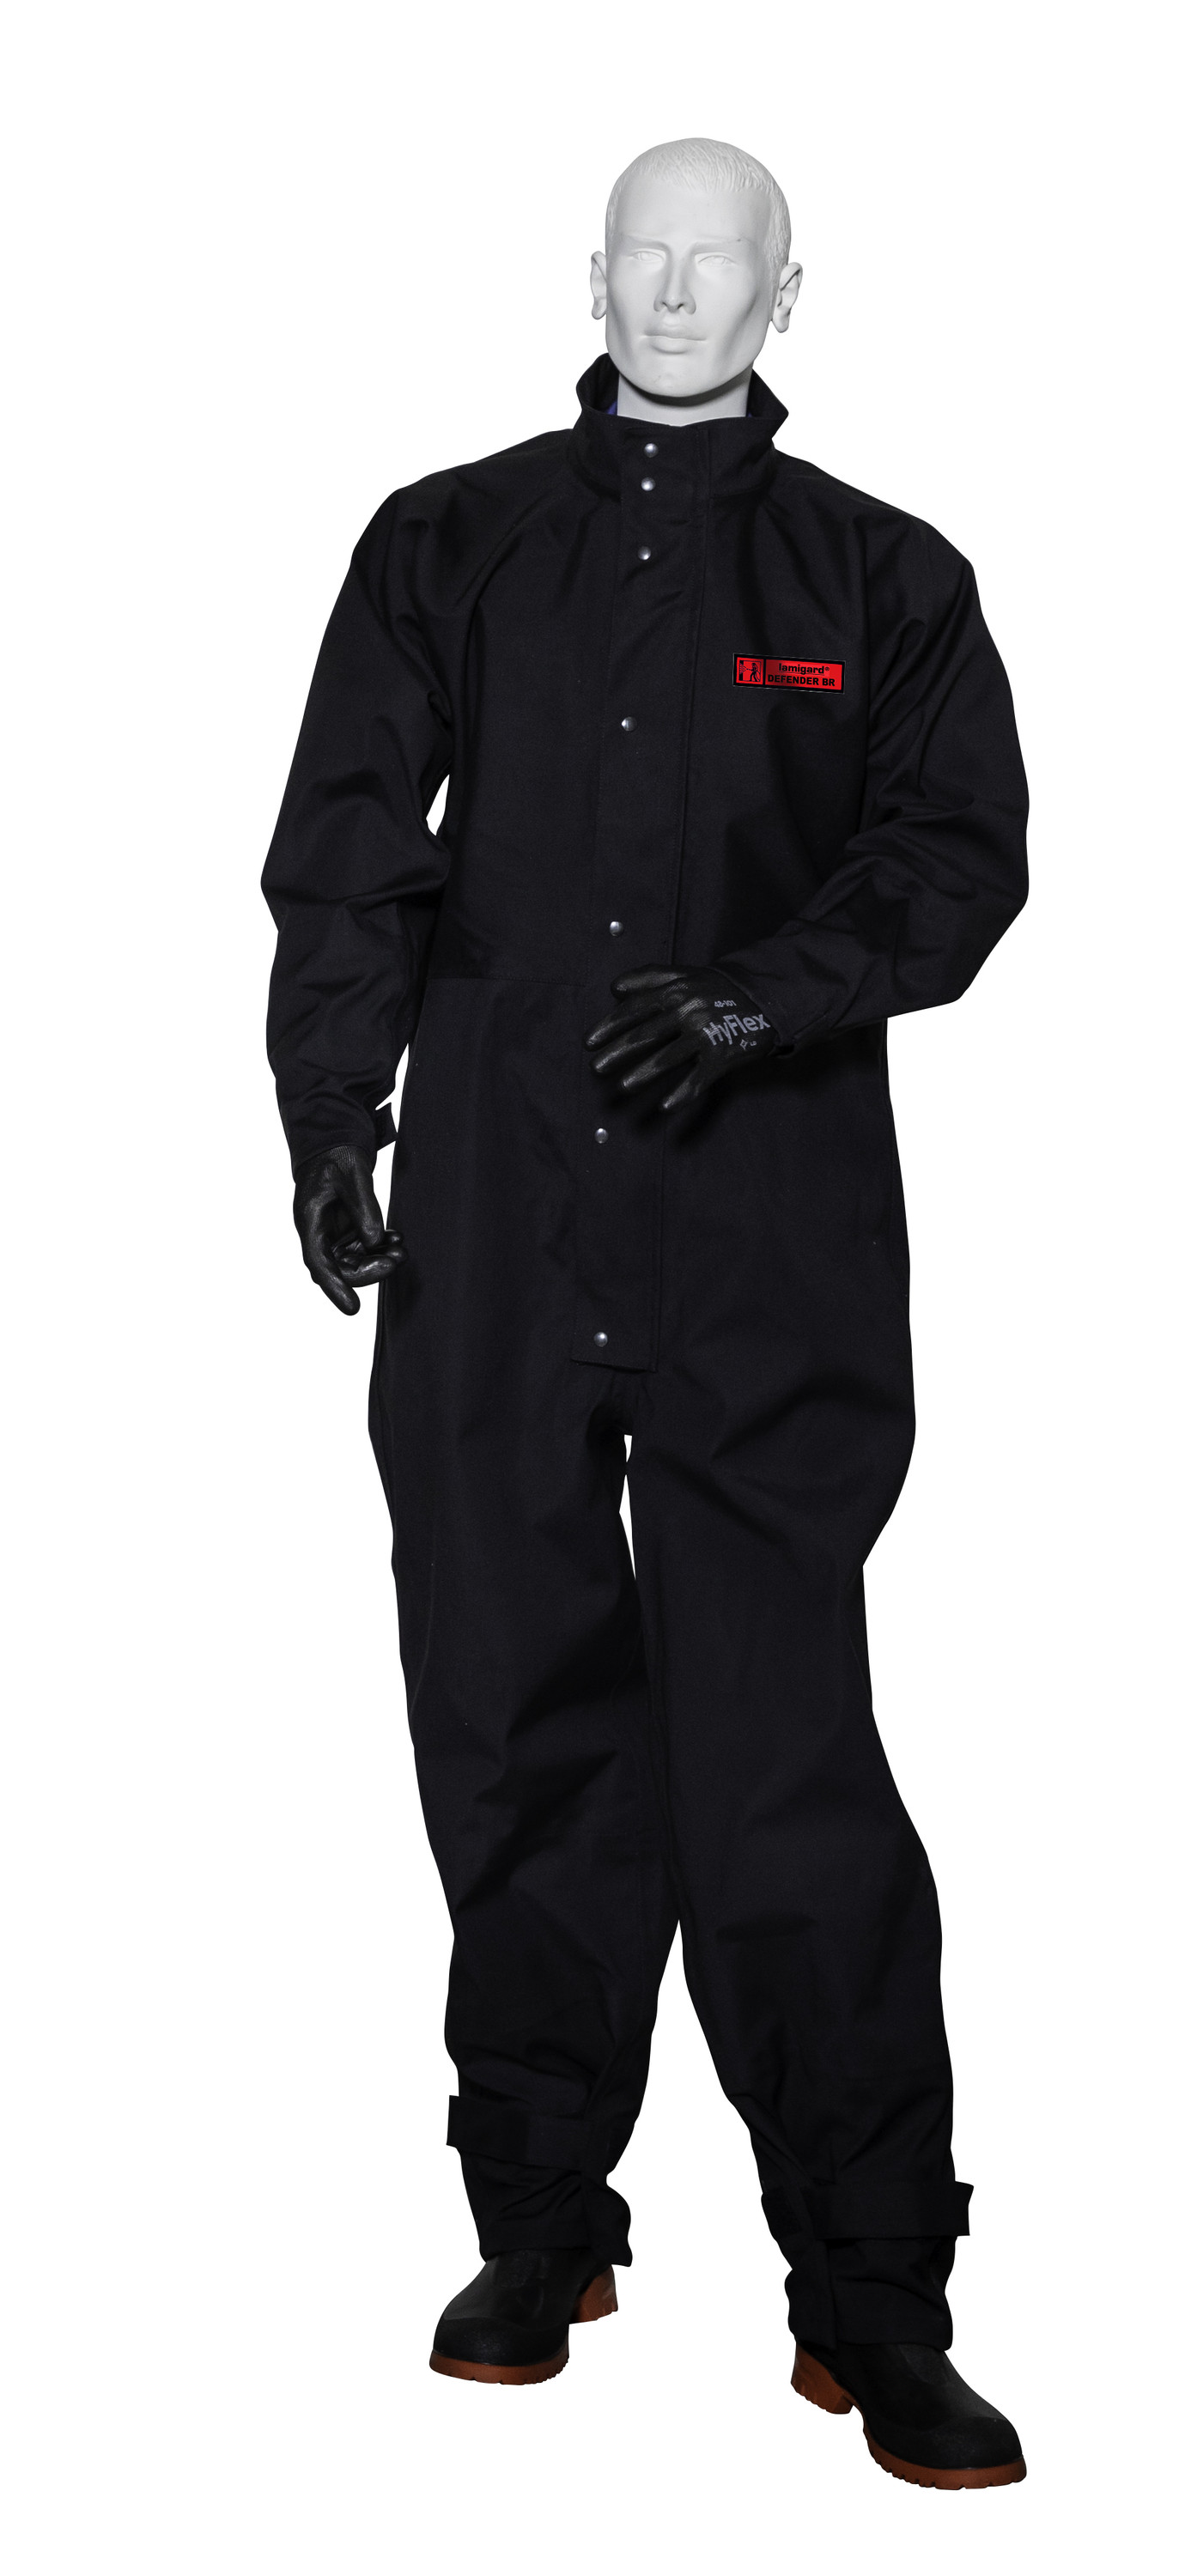 Strahlerschutzanzug Defender BR, Farbe schwarz, Größe klein (165-175 cm)